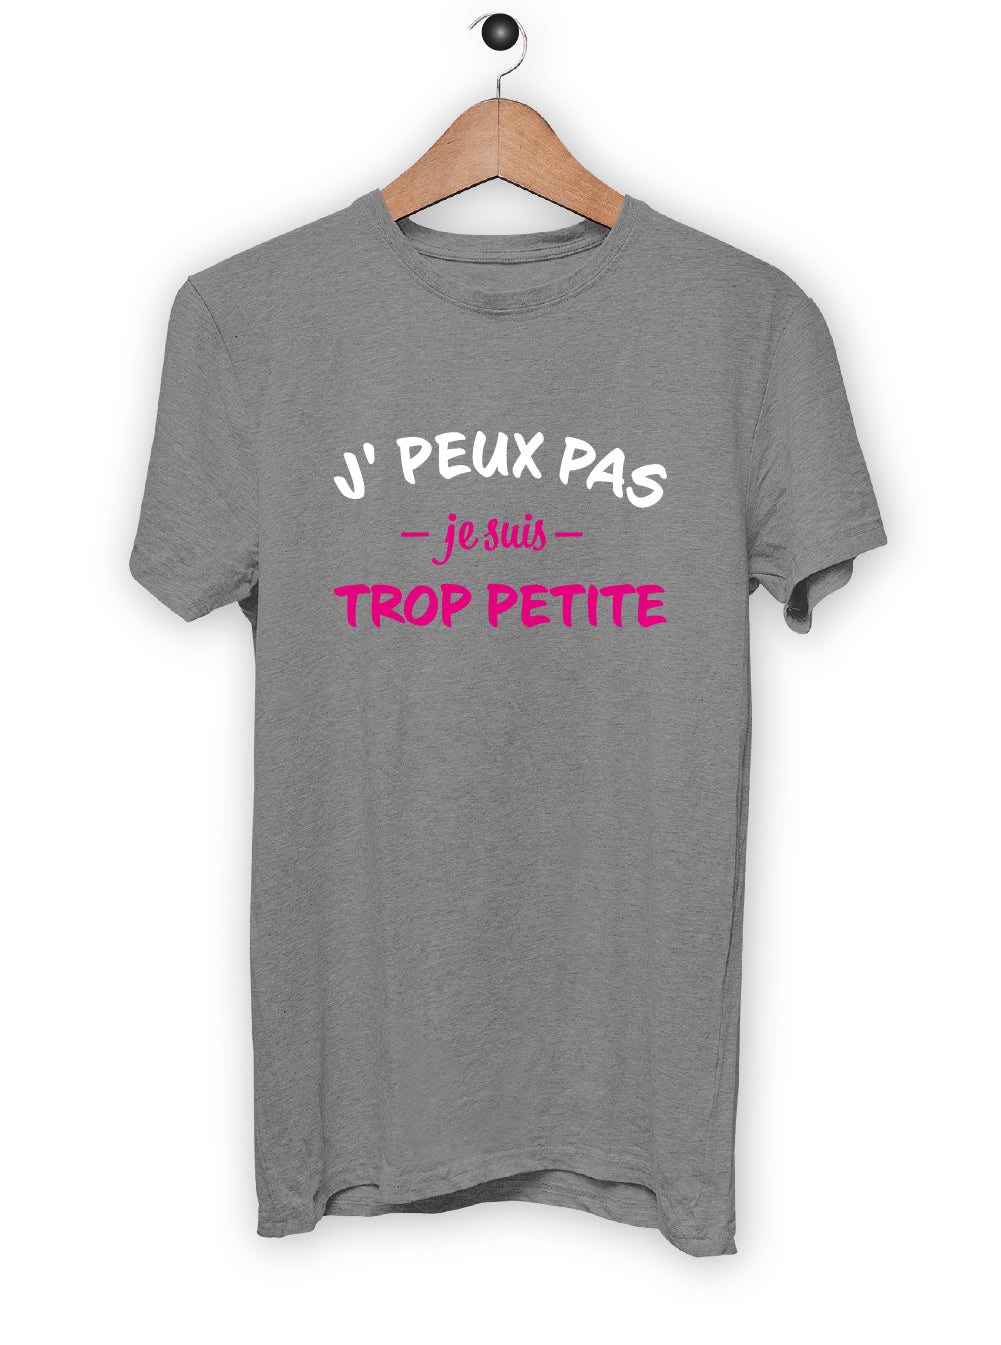 T-Shirt "J'PEUX PAS JE SUIS TROP PETITE"